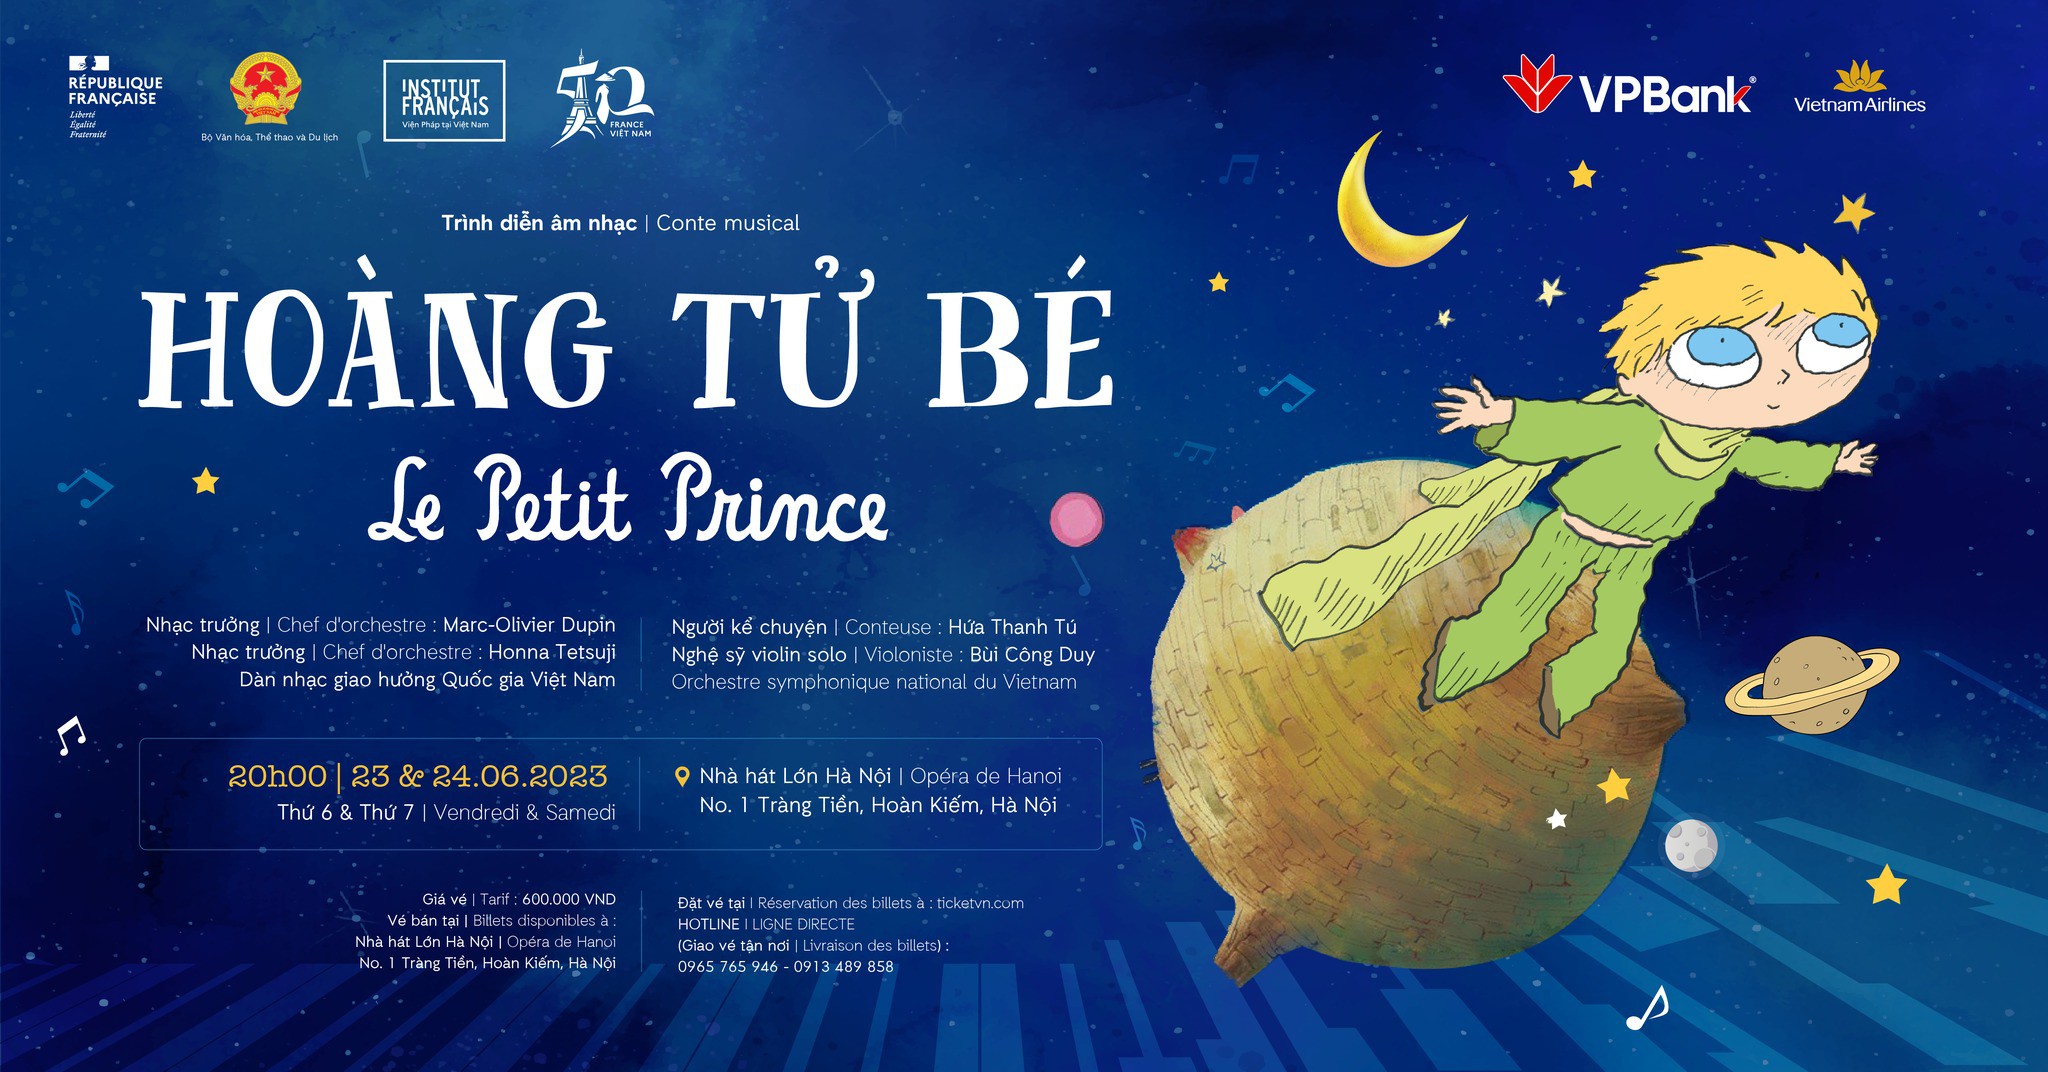 Le Petit Prince, The Little Prince, France